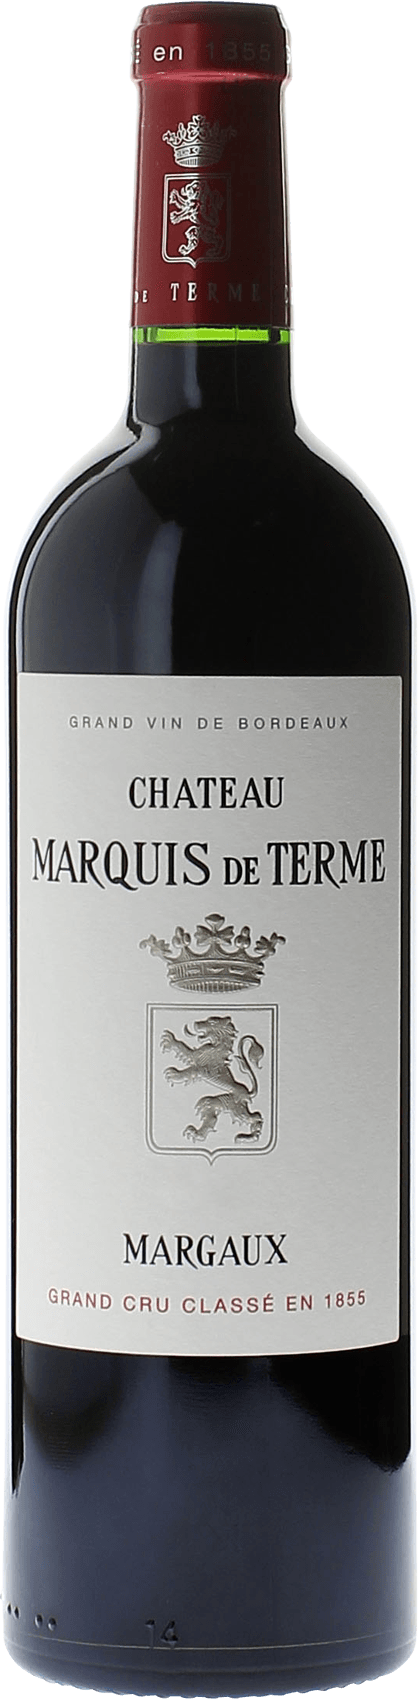 Marquis de terme 2008 4me Grand cru class Margaux, Bordeaux rouge